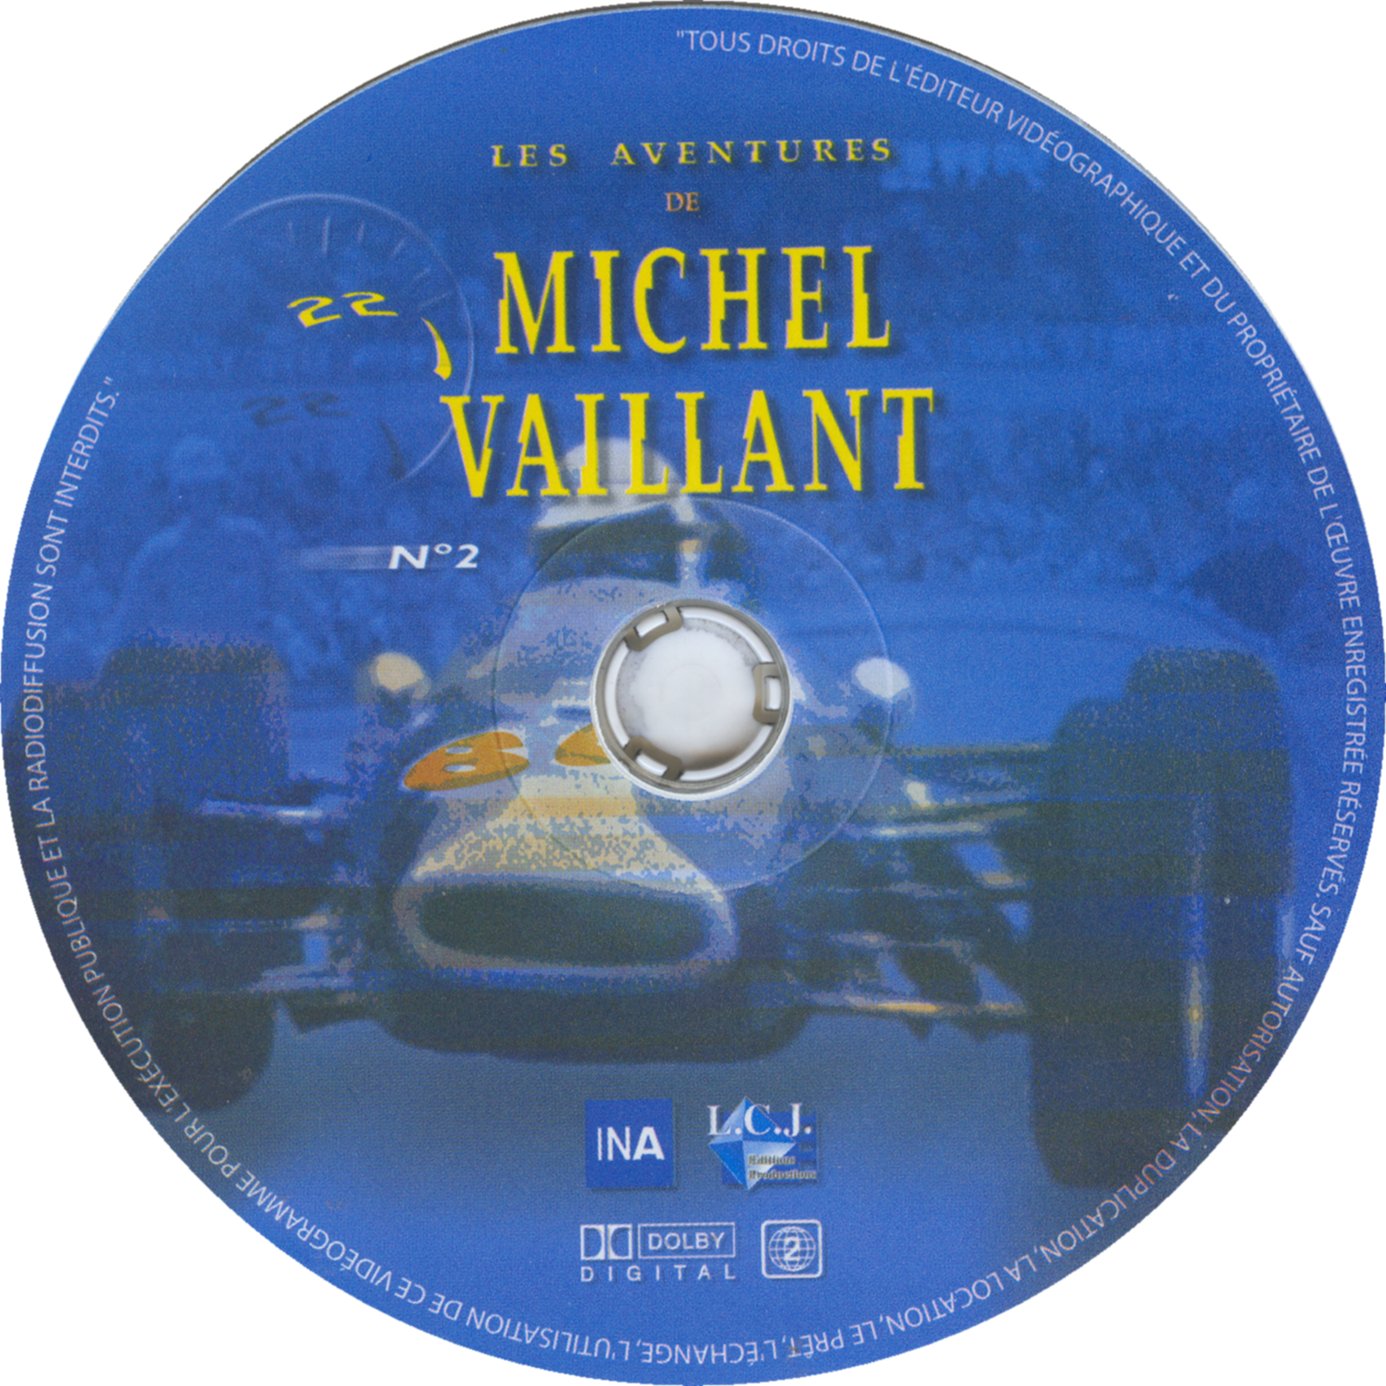 Les aventures de Michel Vaillant DVD 2